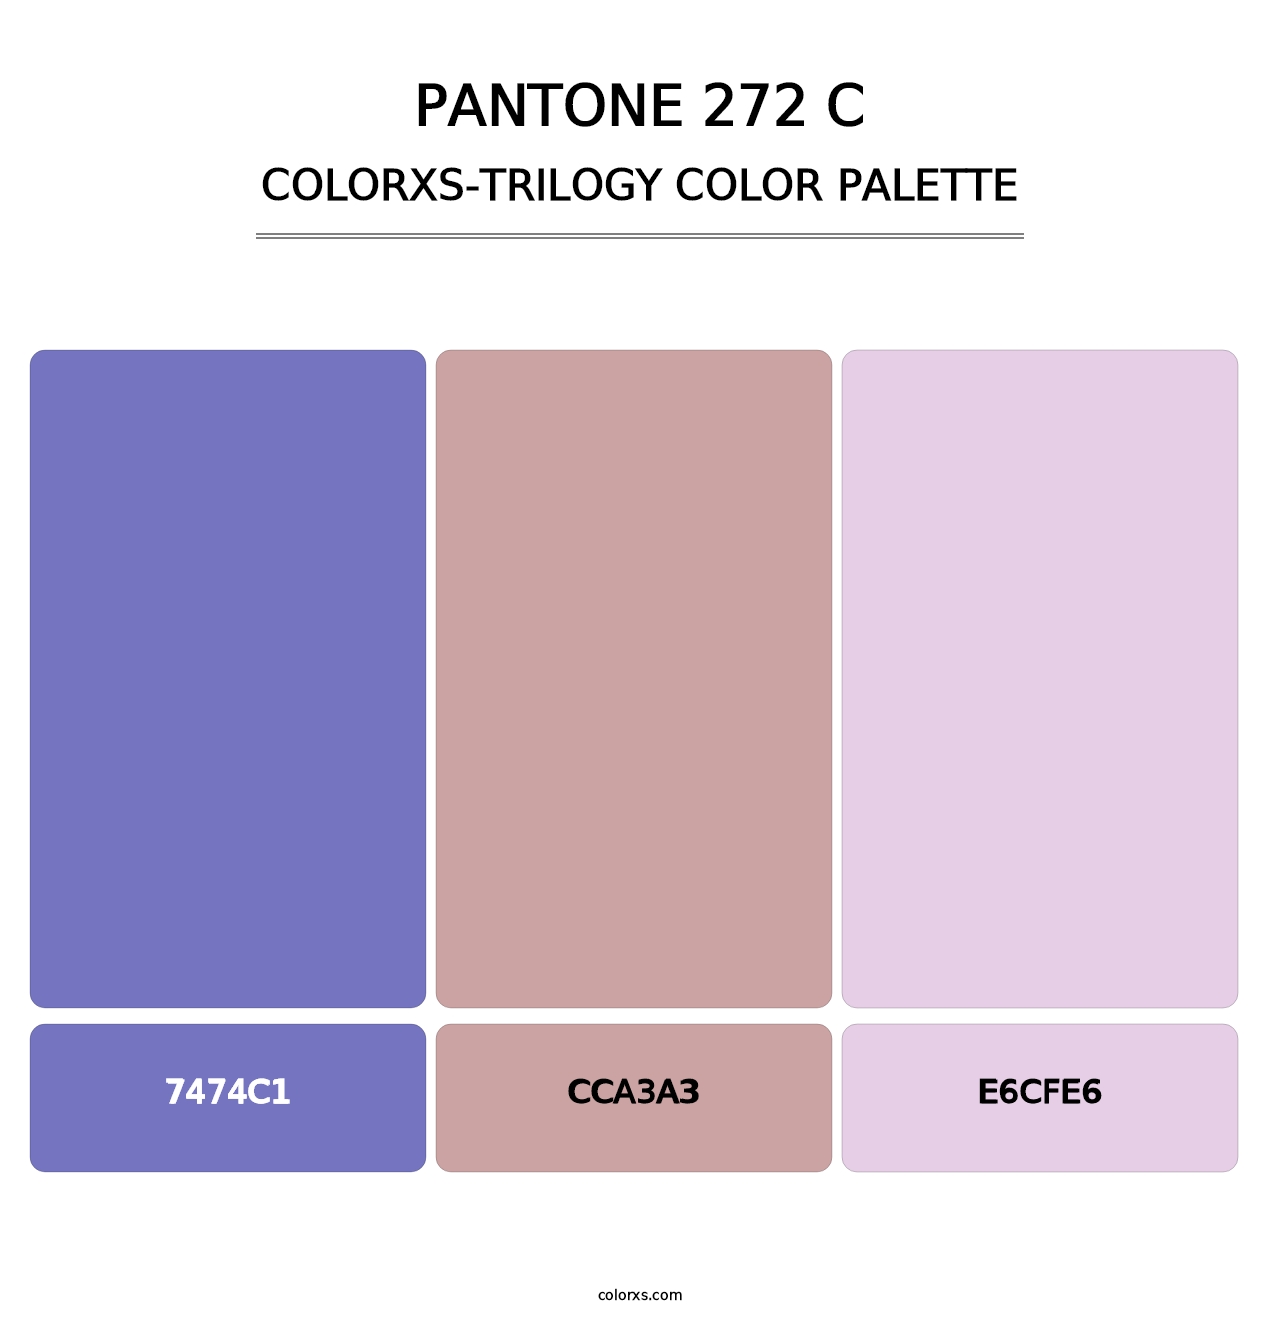 PANTONE 272 C - Colorxs Trilogy Palette